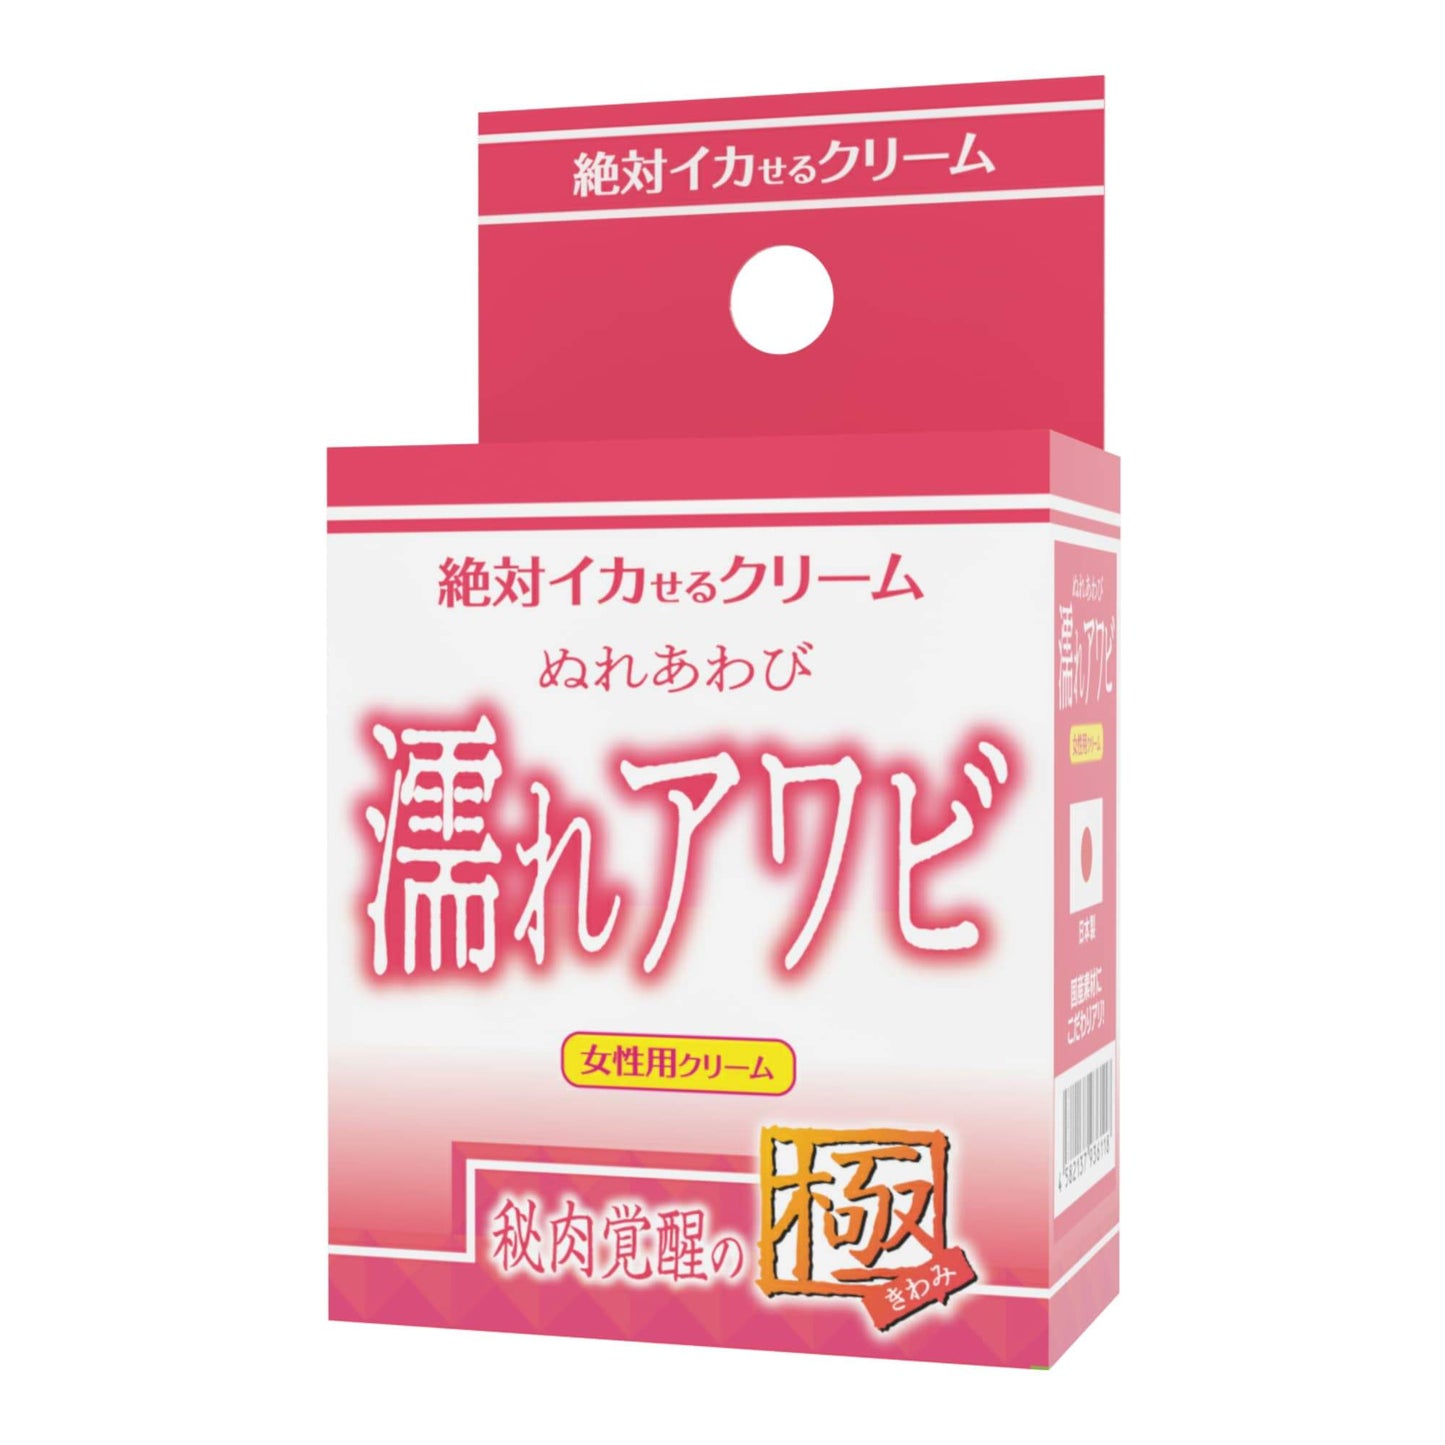 SSI JAPAN 【女性用】絕對潮吹乳霜 濡れアワビ 私處覺醒の極 高潮興奮液 購買